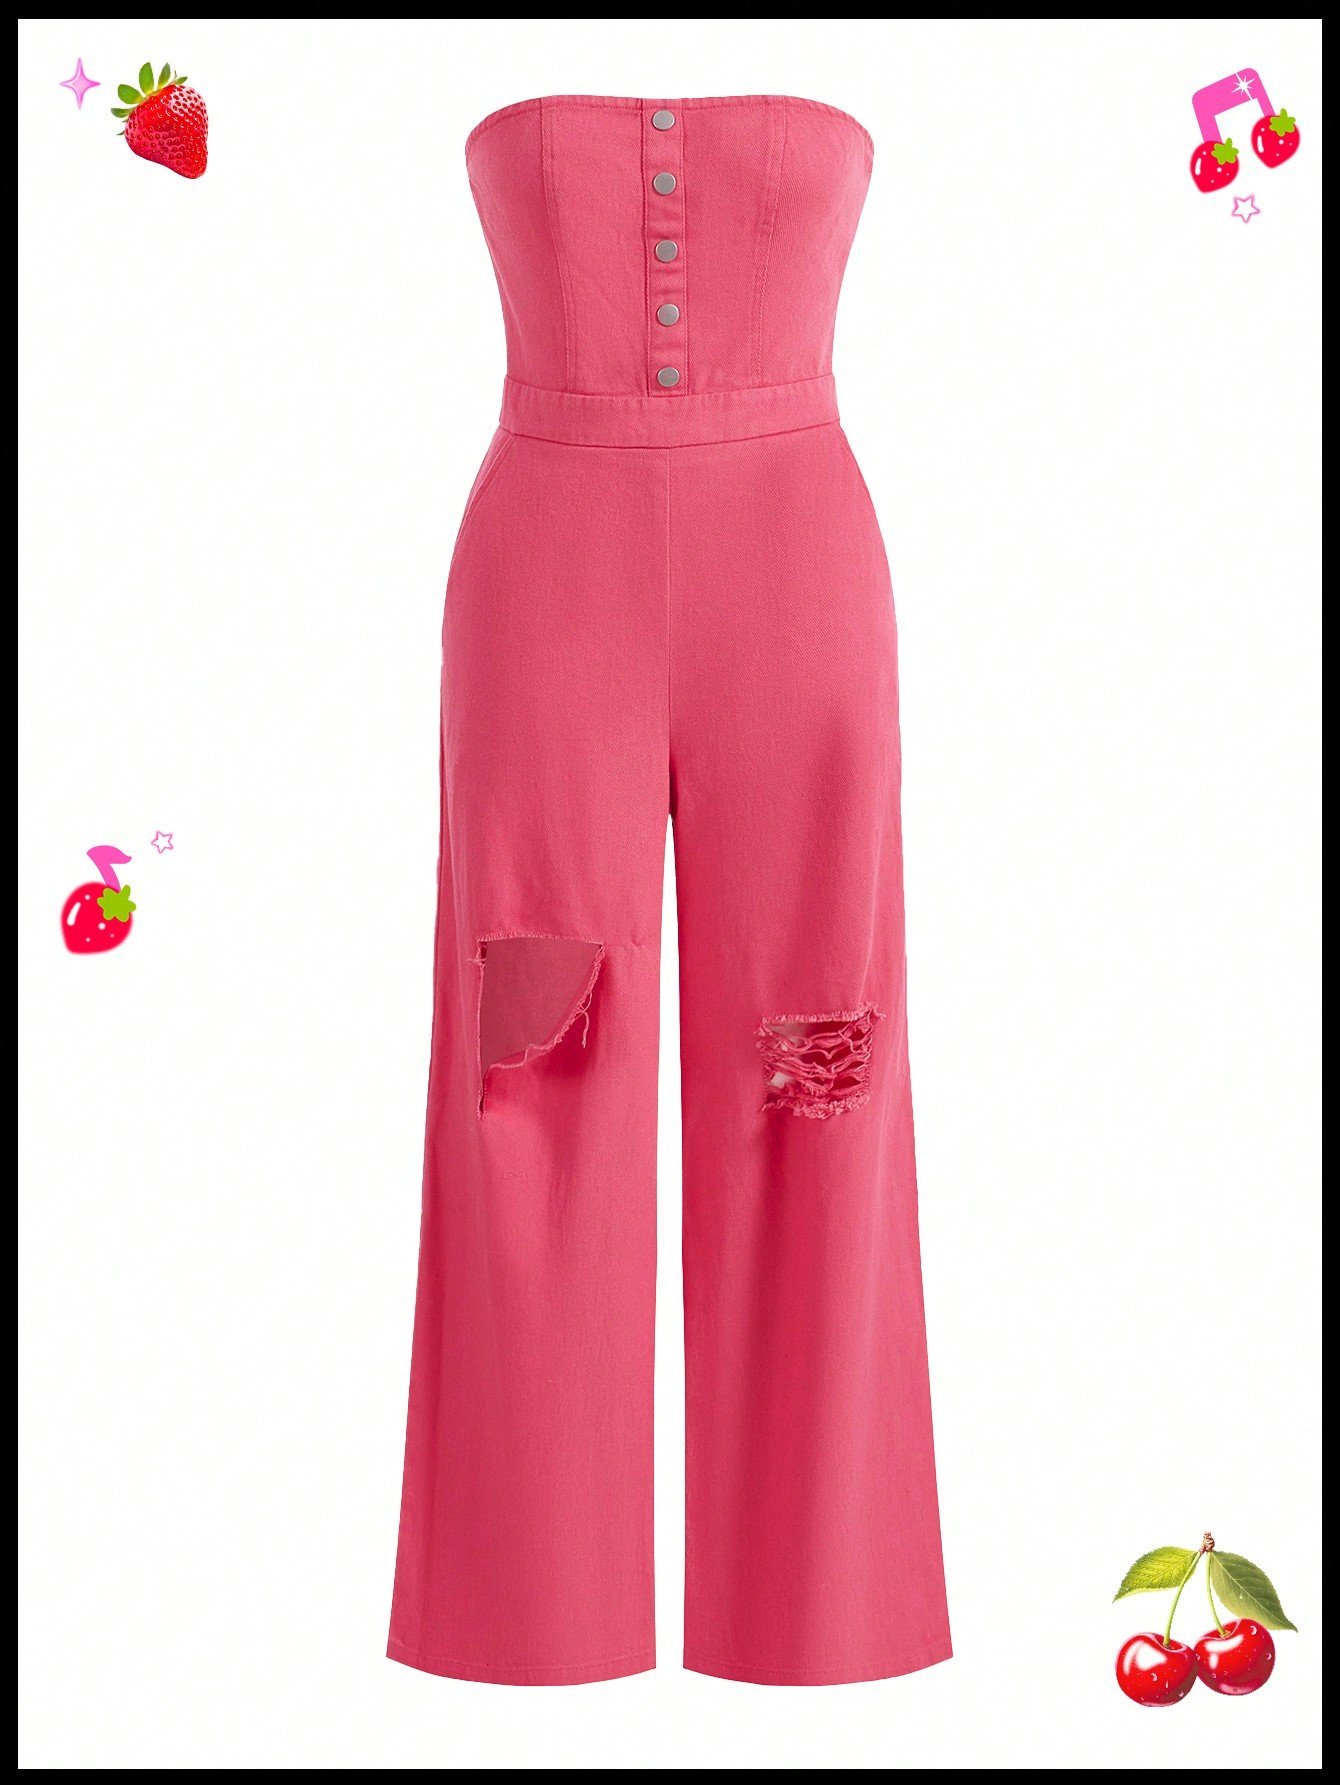 SHEIN Neu ダイバーシティ 冒険的 ジャンプスーツ サマーウェア ストラップレス ピンク色 カーゴパンツ